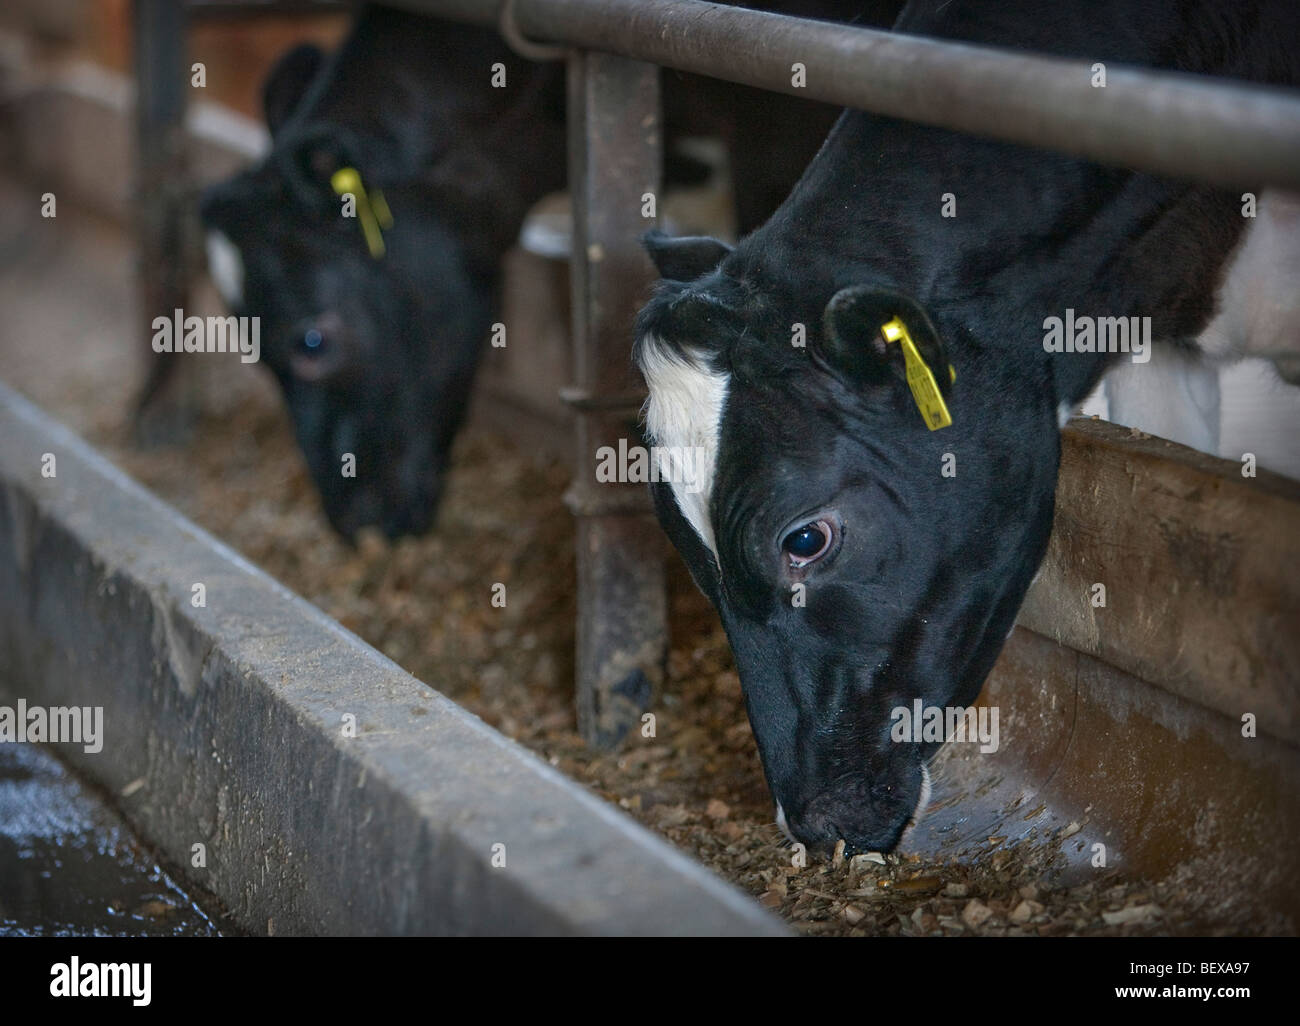 Milk cows on a farm. Stock Photo